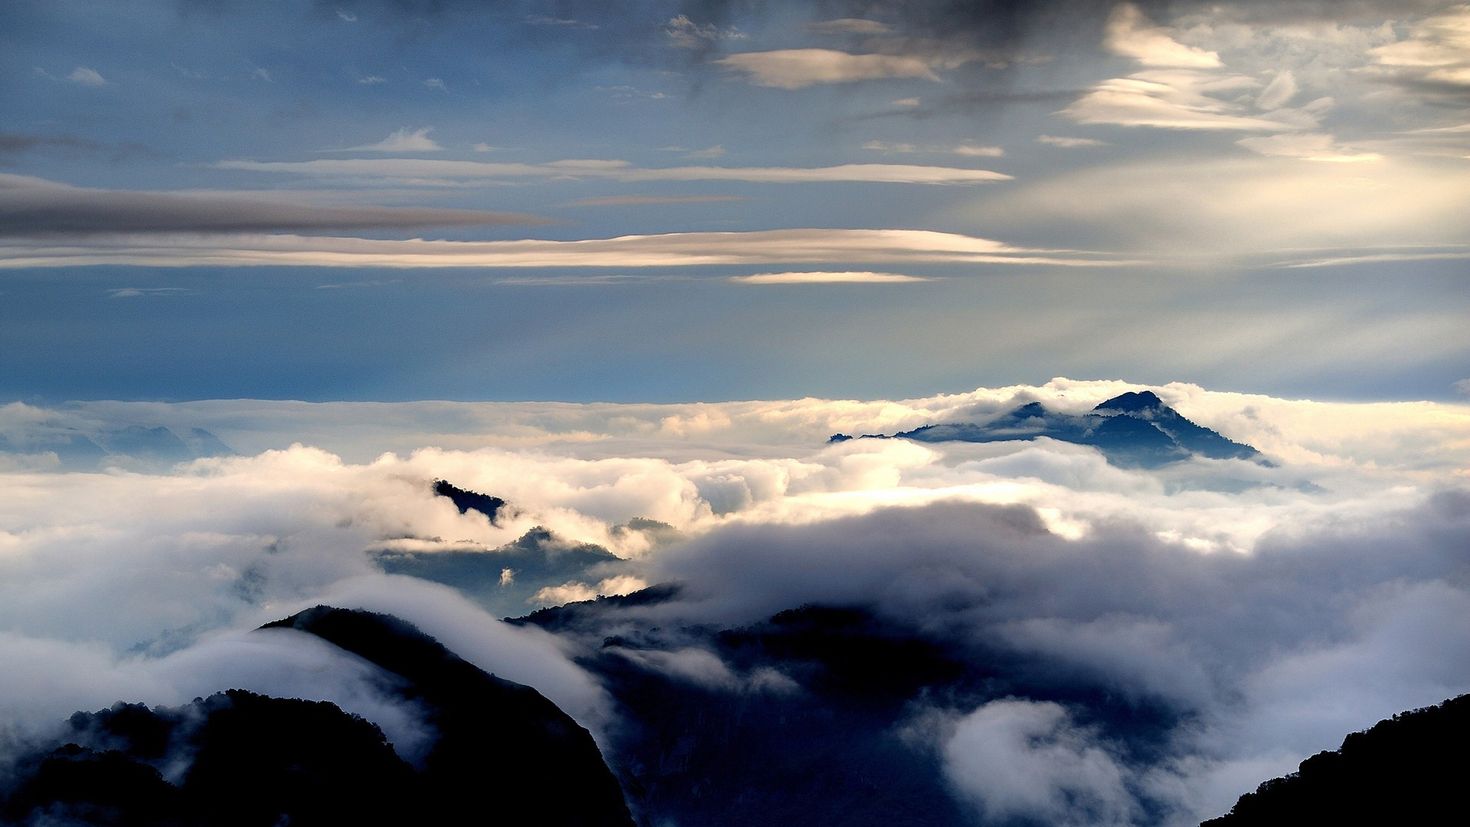 Phong cảnh đám mây lơ lửng trên đỉnh núi 9